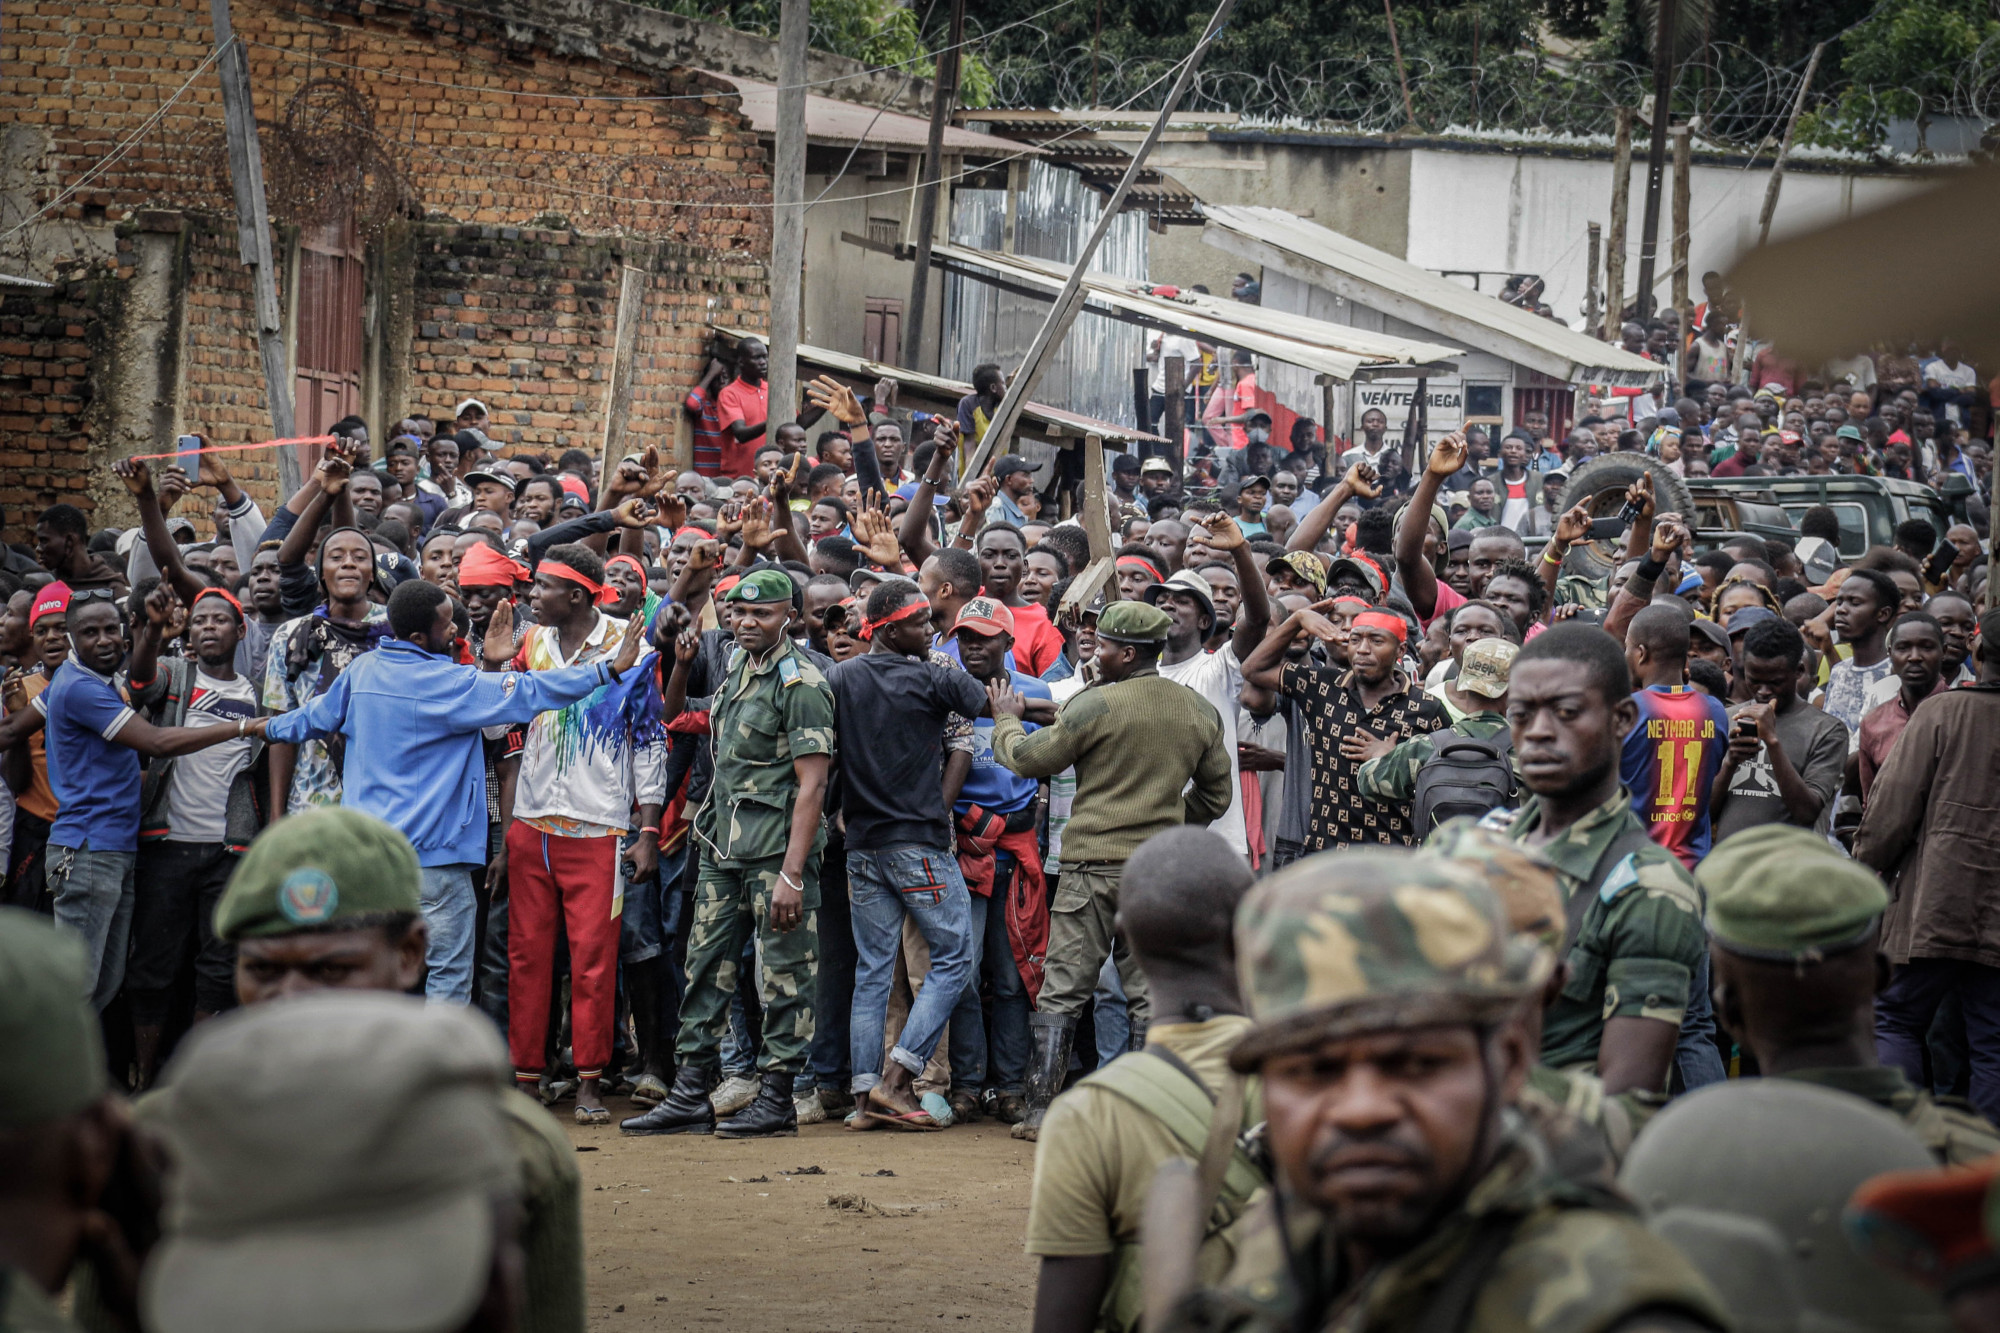 Bunia, RDC, 4 septembre 2020. Des soldats gouvernementaux prennent position devant une foule de jeunes en colère, après l’intrusion d’une centaine de miliciens lourdement armés dans le chef-lieu de l’Ituri. © Dieudonné Dirole pour la Fondation Carmignac